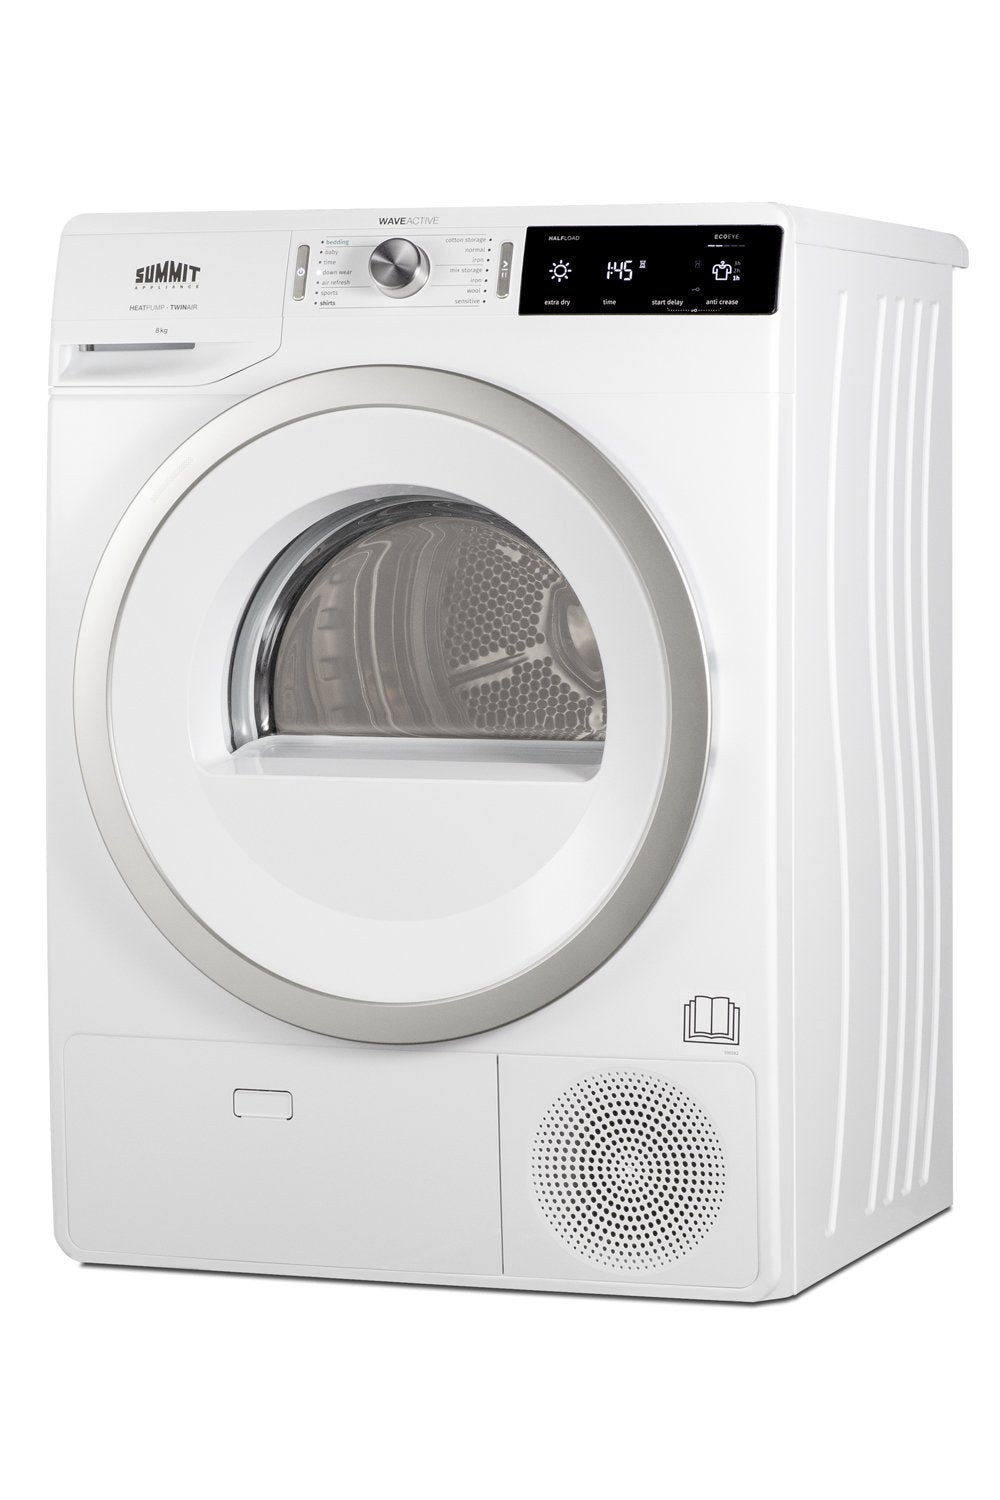 SUMMIT 24 in. 208-240V Heat Pump Dryer in White (SLD242W)